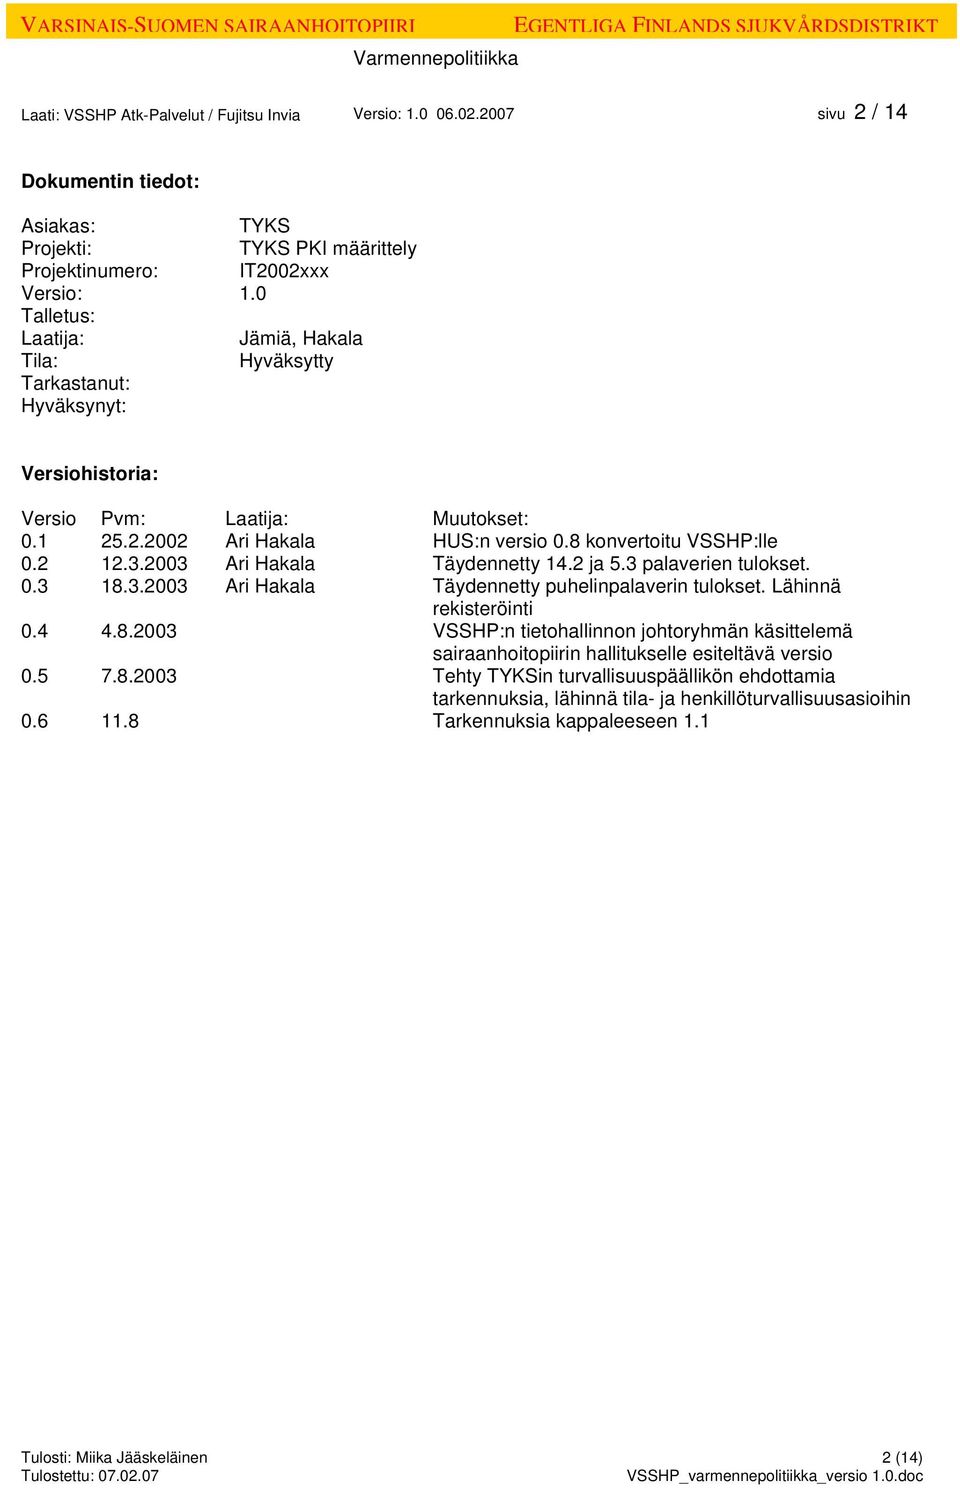 2003 Ari Hakala Täydennetty 14.2 ja 5.3 palaverien tulokset. 0.3 18.3.2003 Ari Hakala Täydennetty puhelinpalaverin tulokset. Lähinnä rekisteröinti 0.4 4.8.2003 VSSHP:n tietohallinnon johtoryhmän käsittelemä sairaanhoitopiirin hallitukselle esiteltävä versio 0.